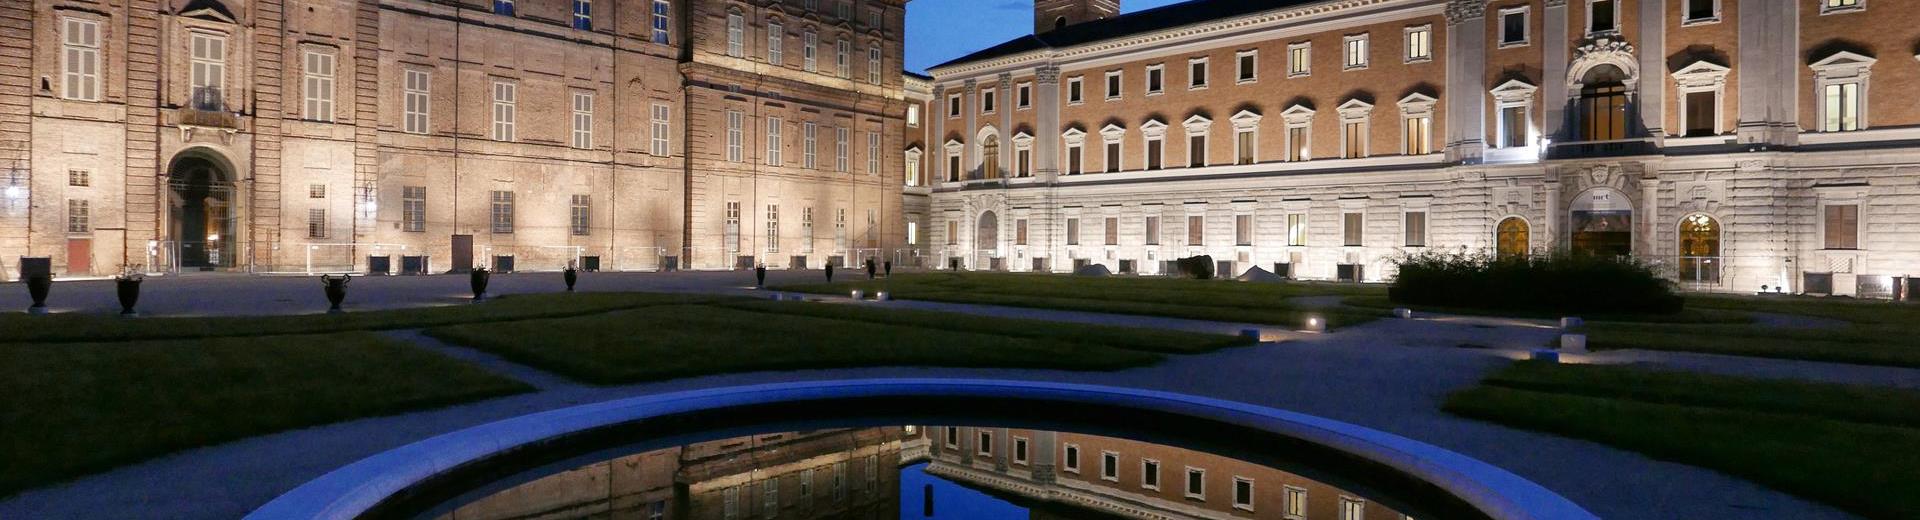 Prenota il BW Plus Hotel Genova per partecipare agli eventi a Torino!